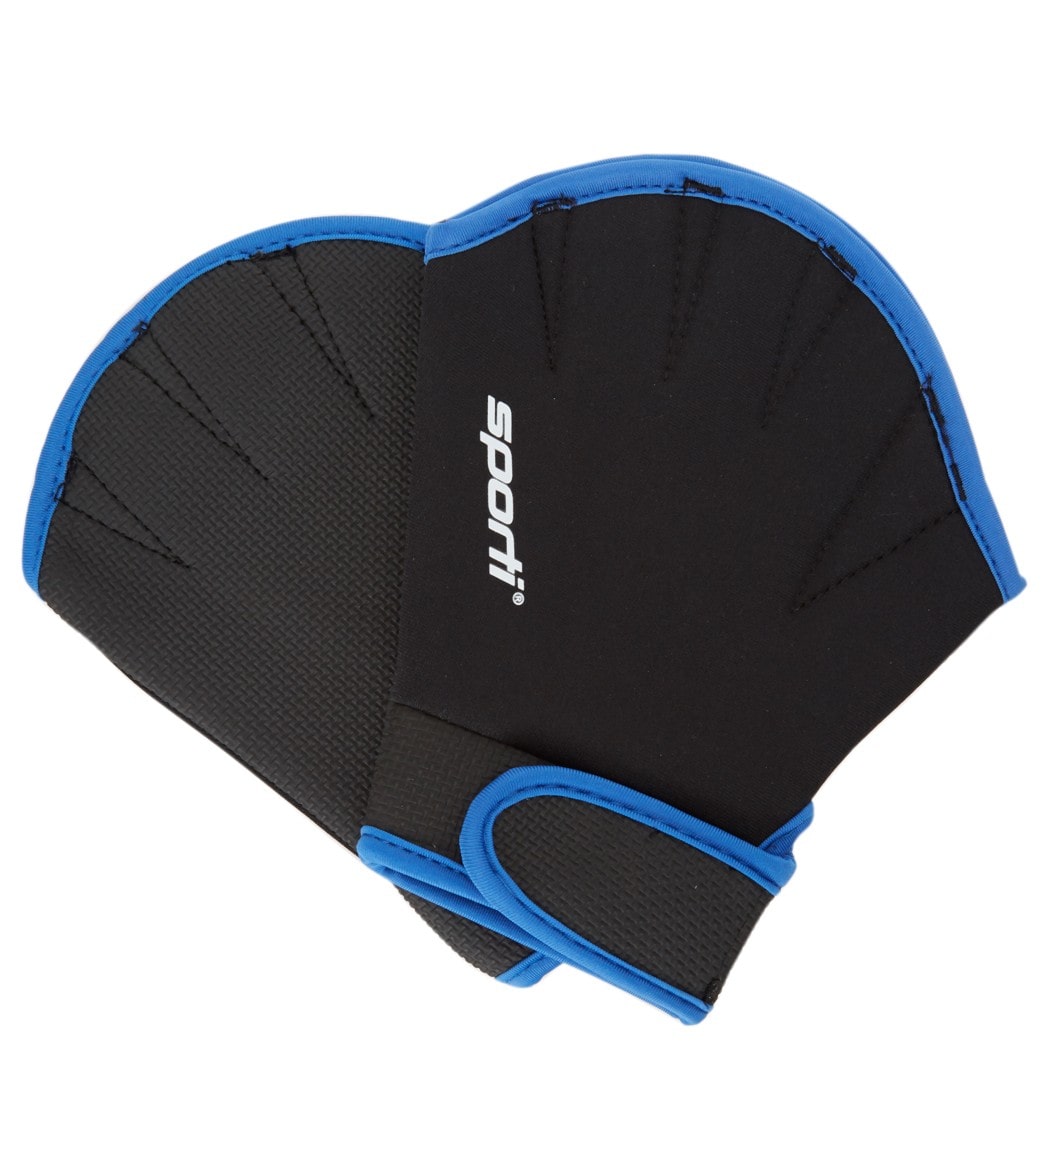 Sporti Neoprene Webbed Fitness Gloves